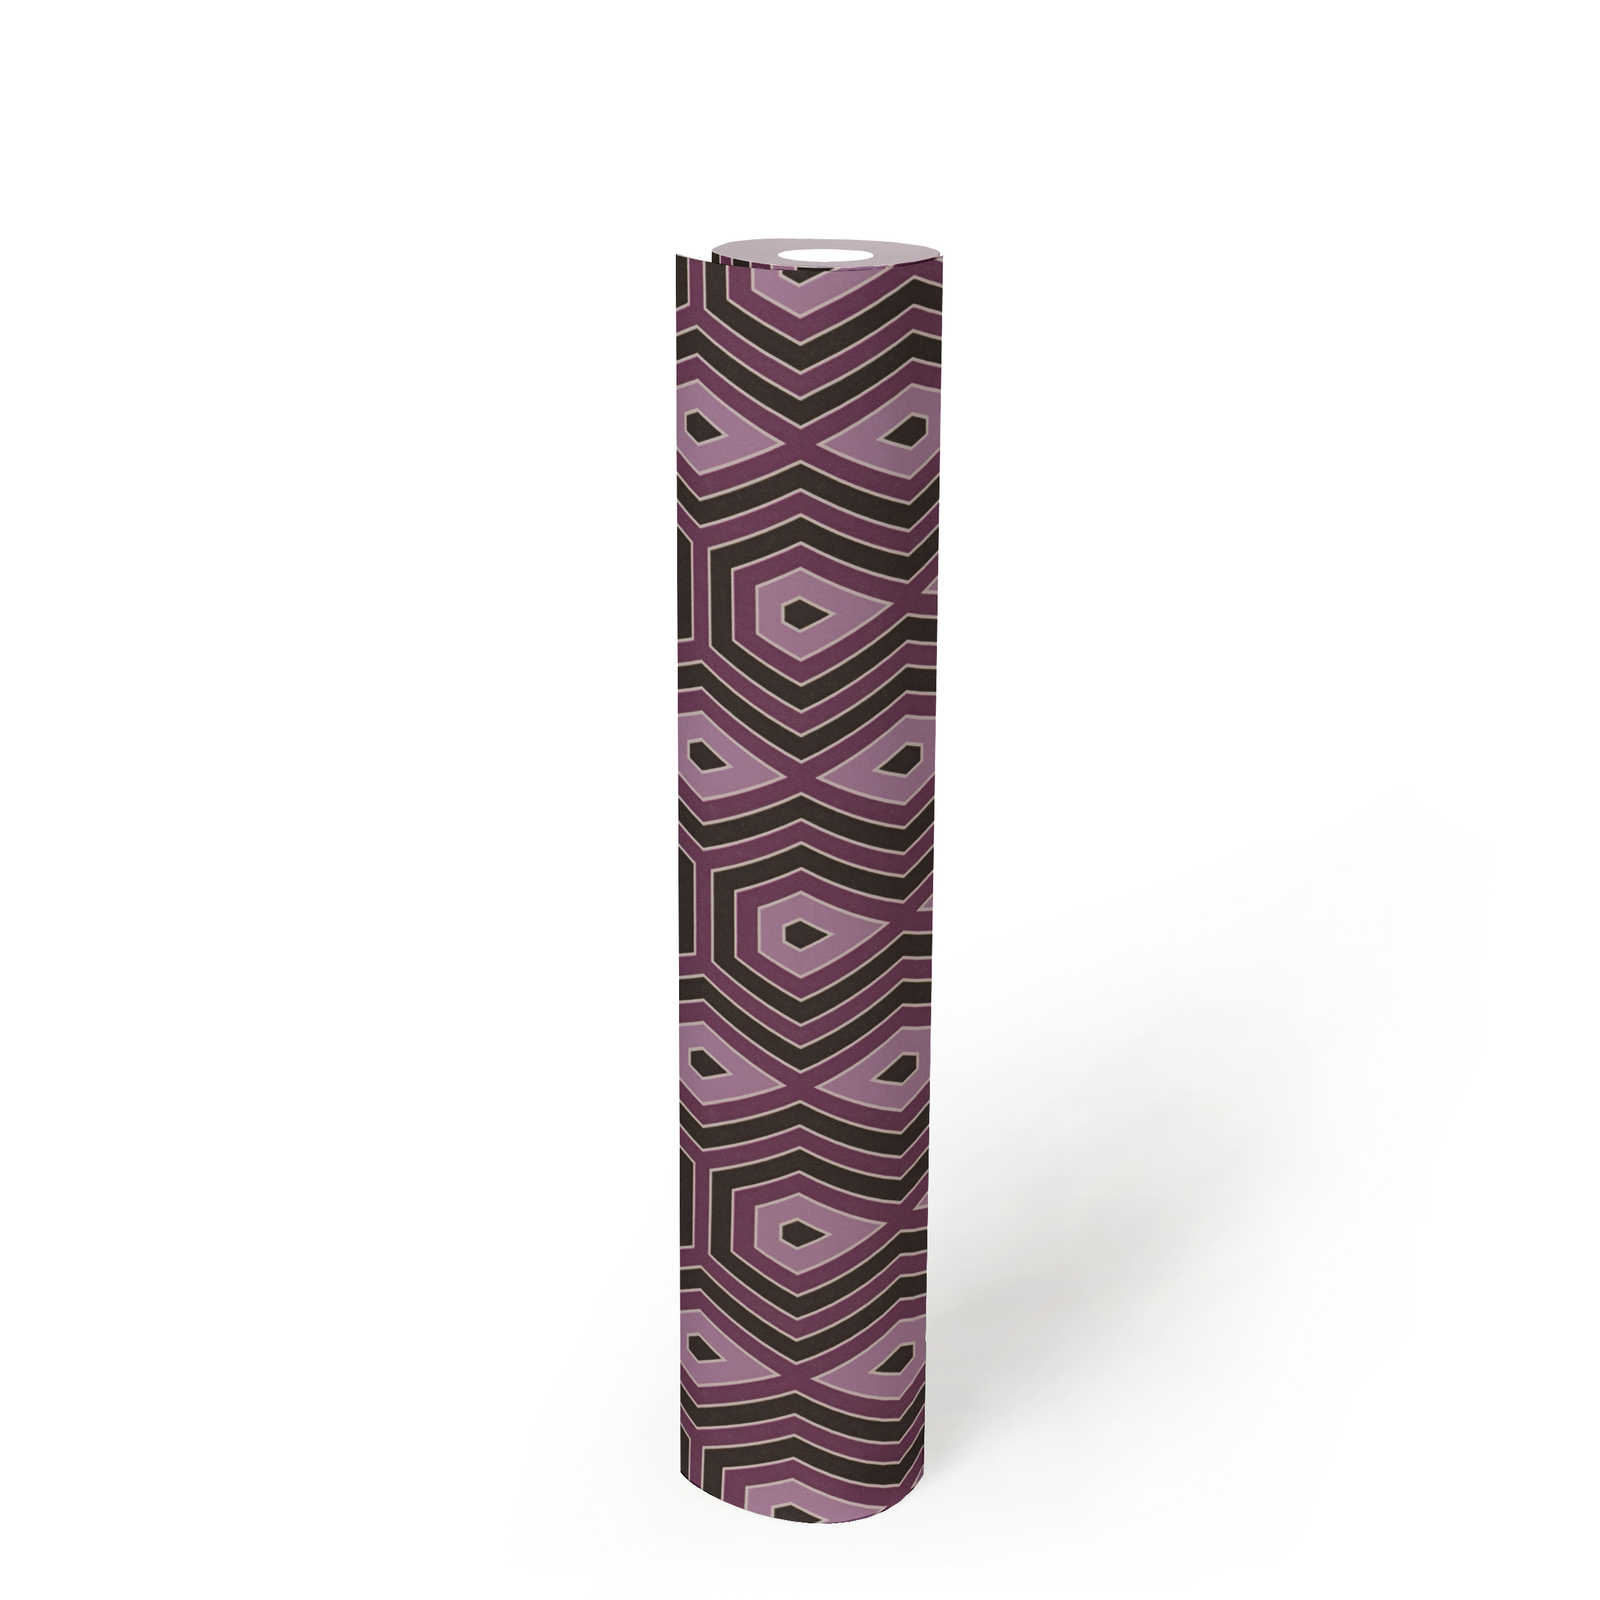             Patroonbehang paars & oudroze met grafisch retro design - paars, zwart
        